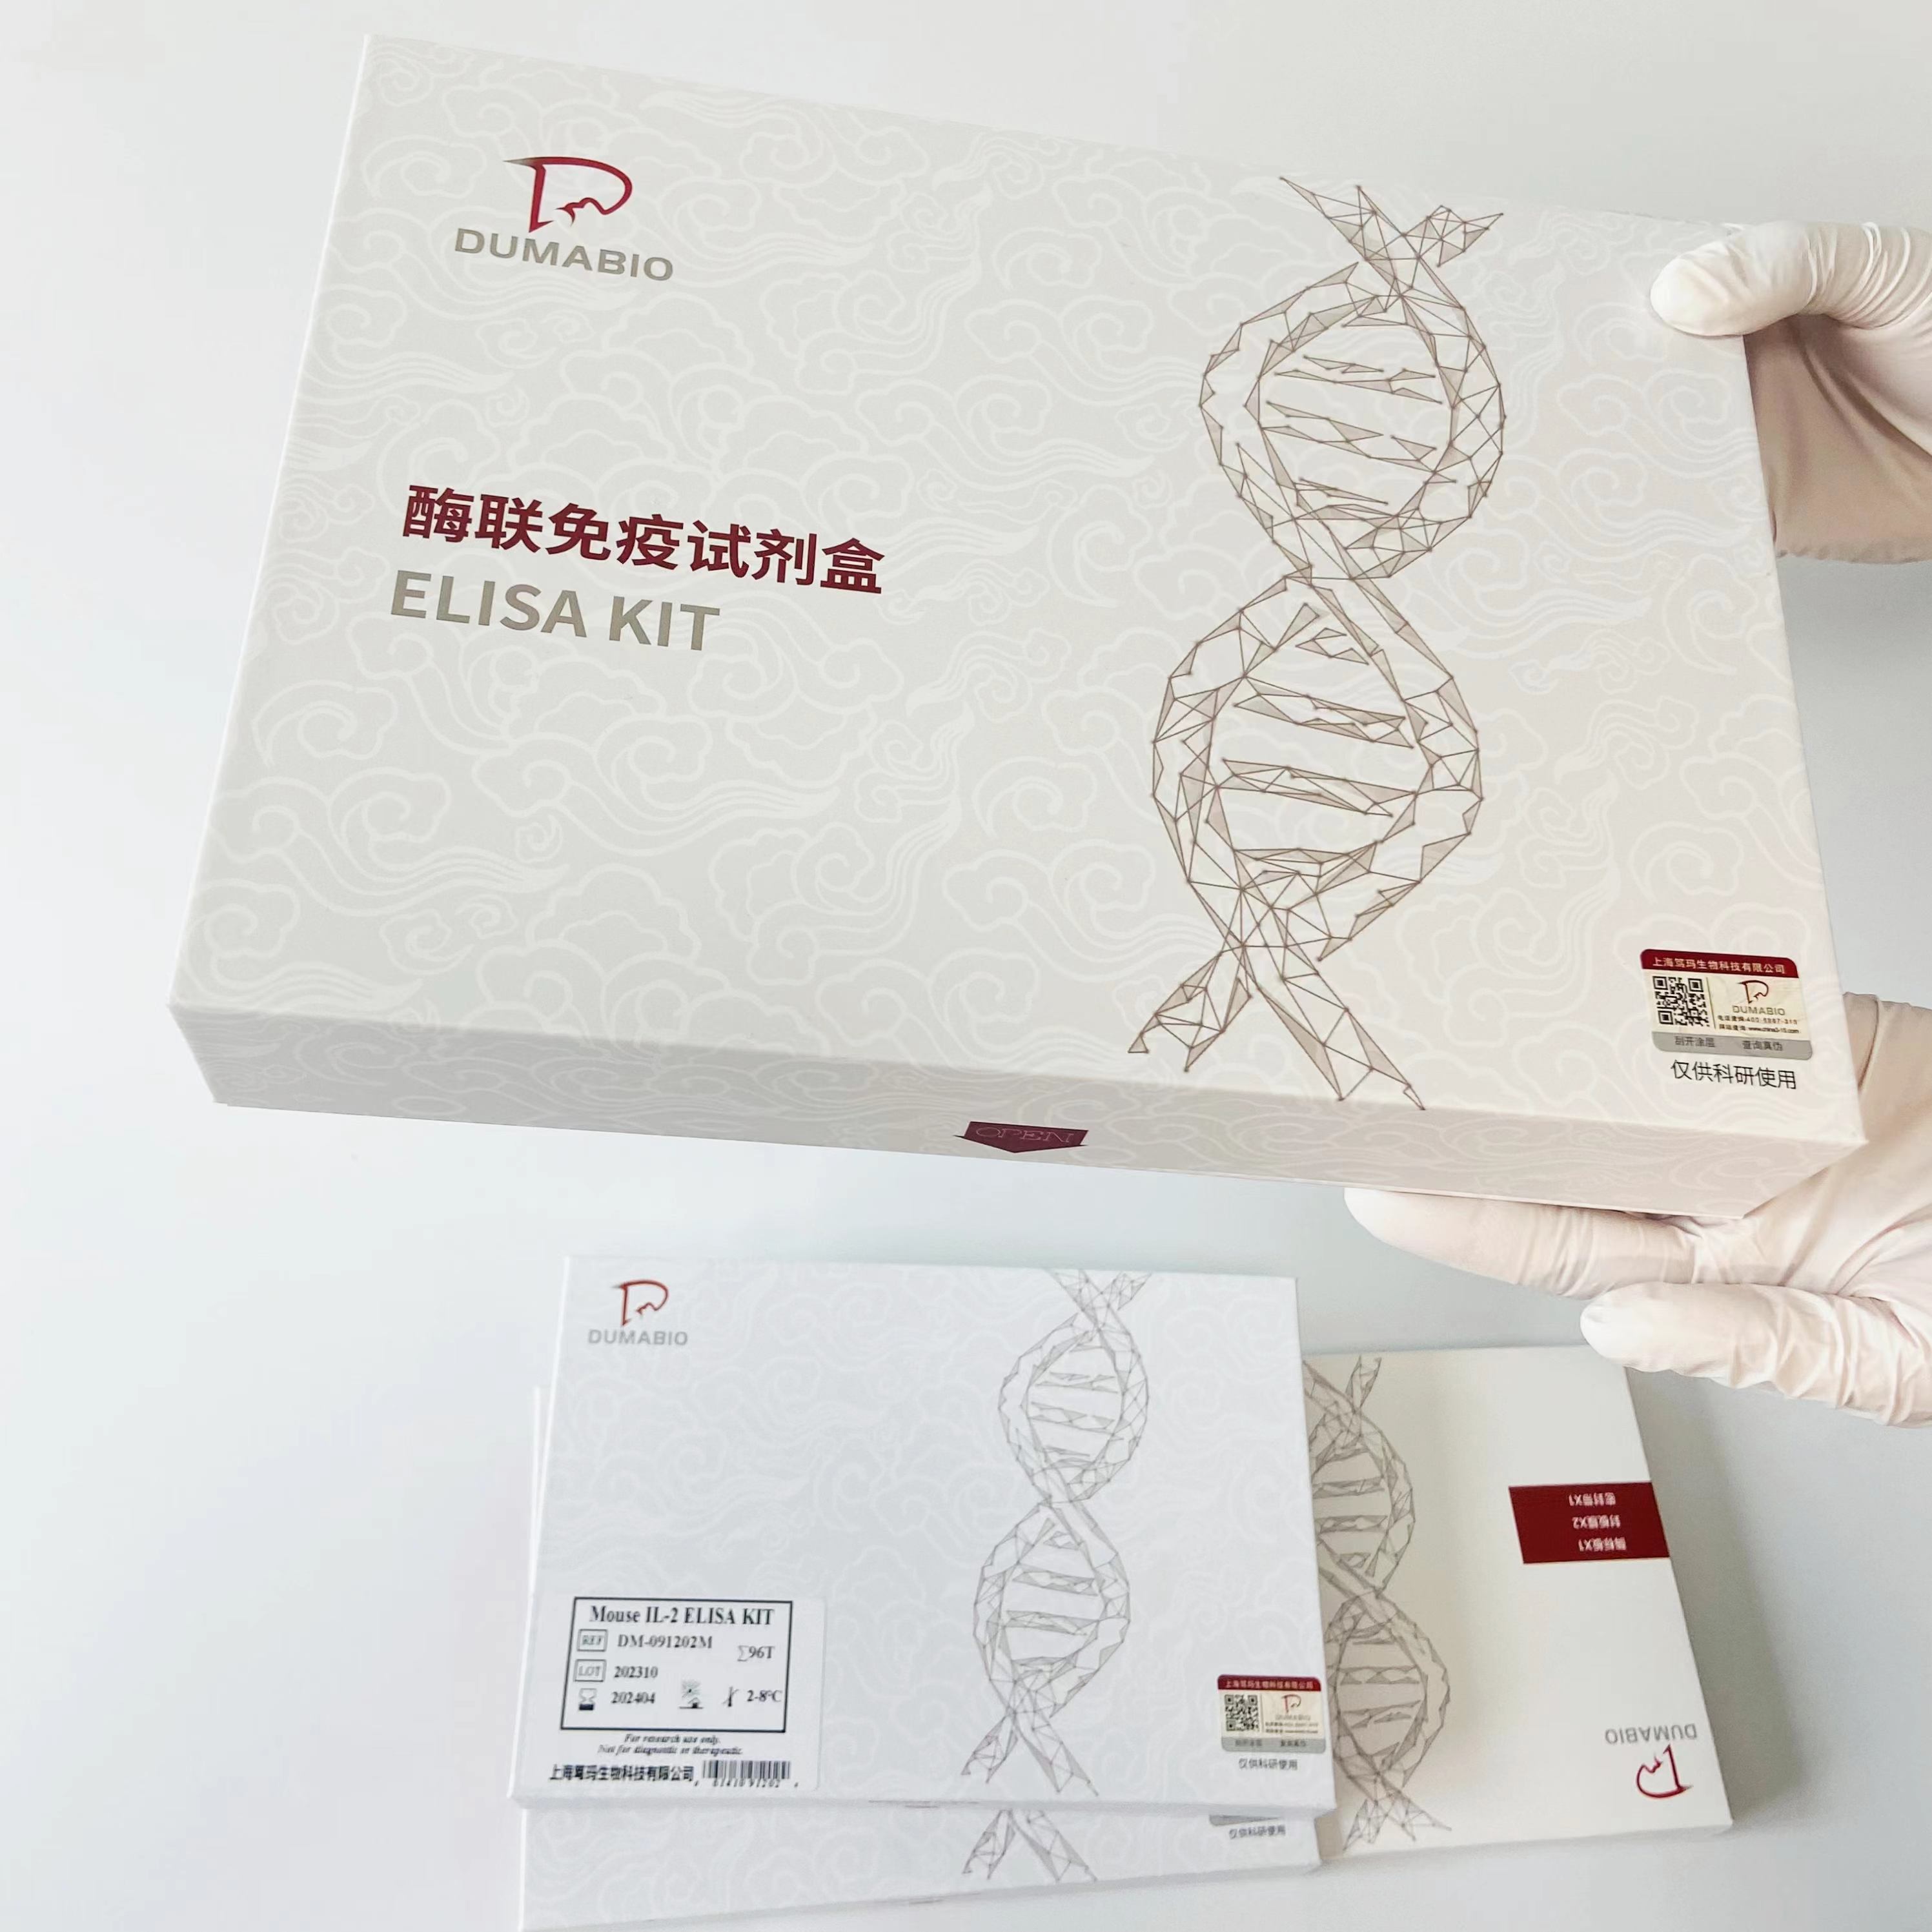 人胶质细胞系来源的神经营养因子(GDNF)ELISA试剂盒